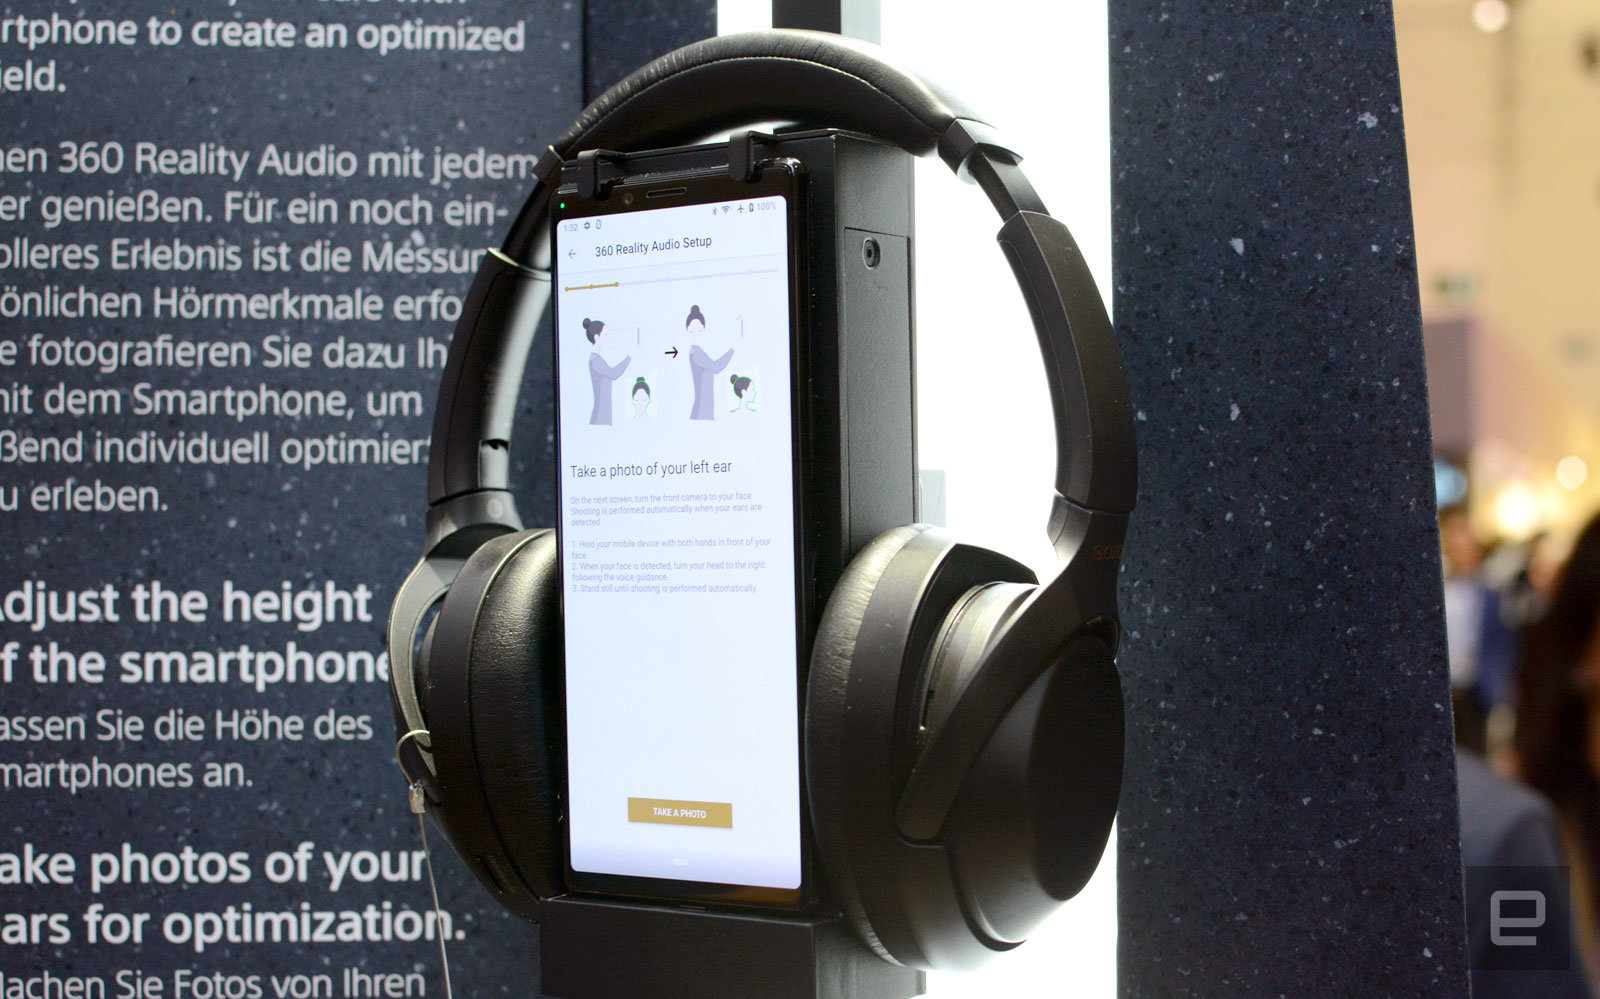 Ứng dụng Headphone của Sony sẽ phân tích tai của bạn để tinh chỉnh cho âm thanh thực tế 360